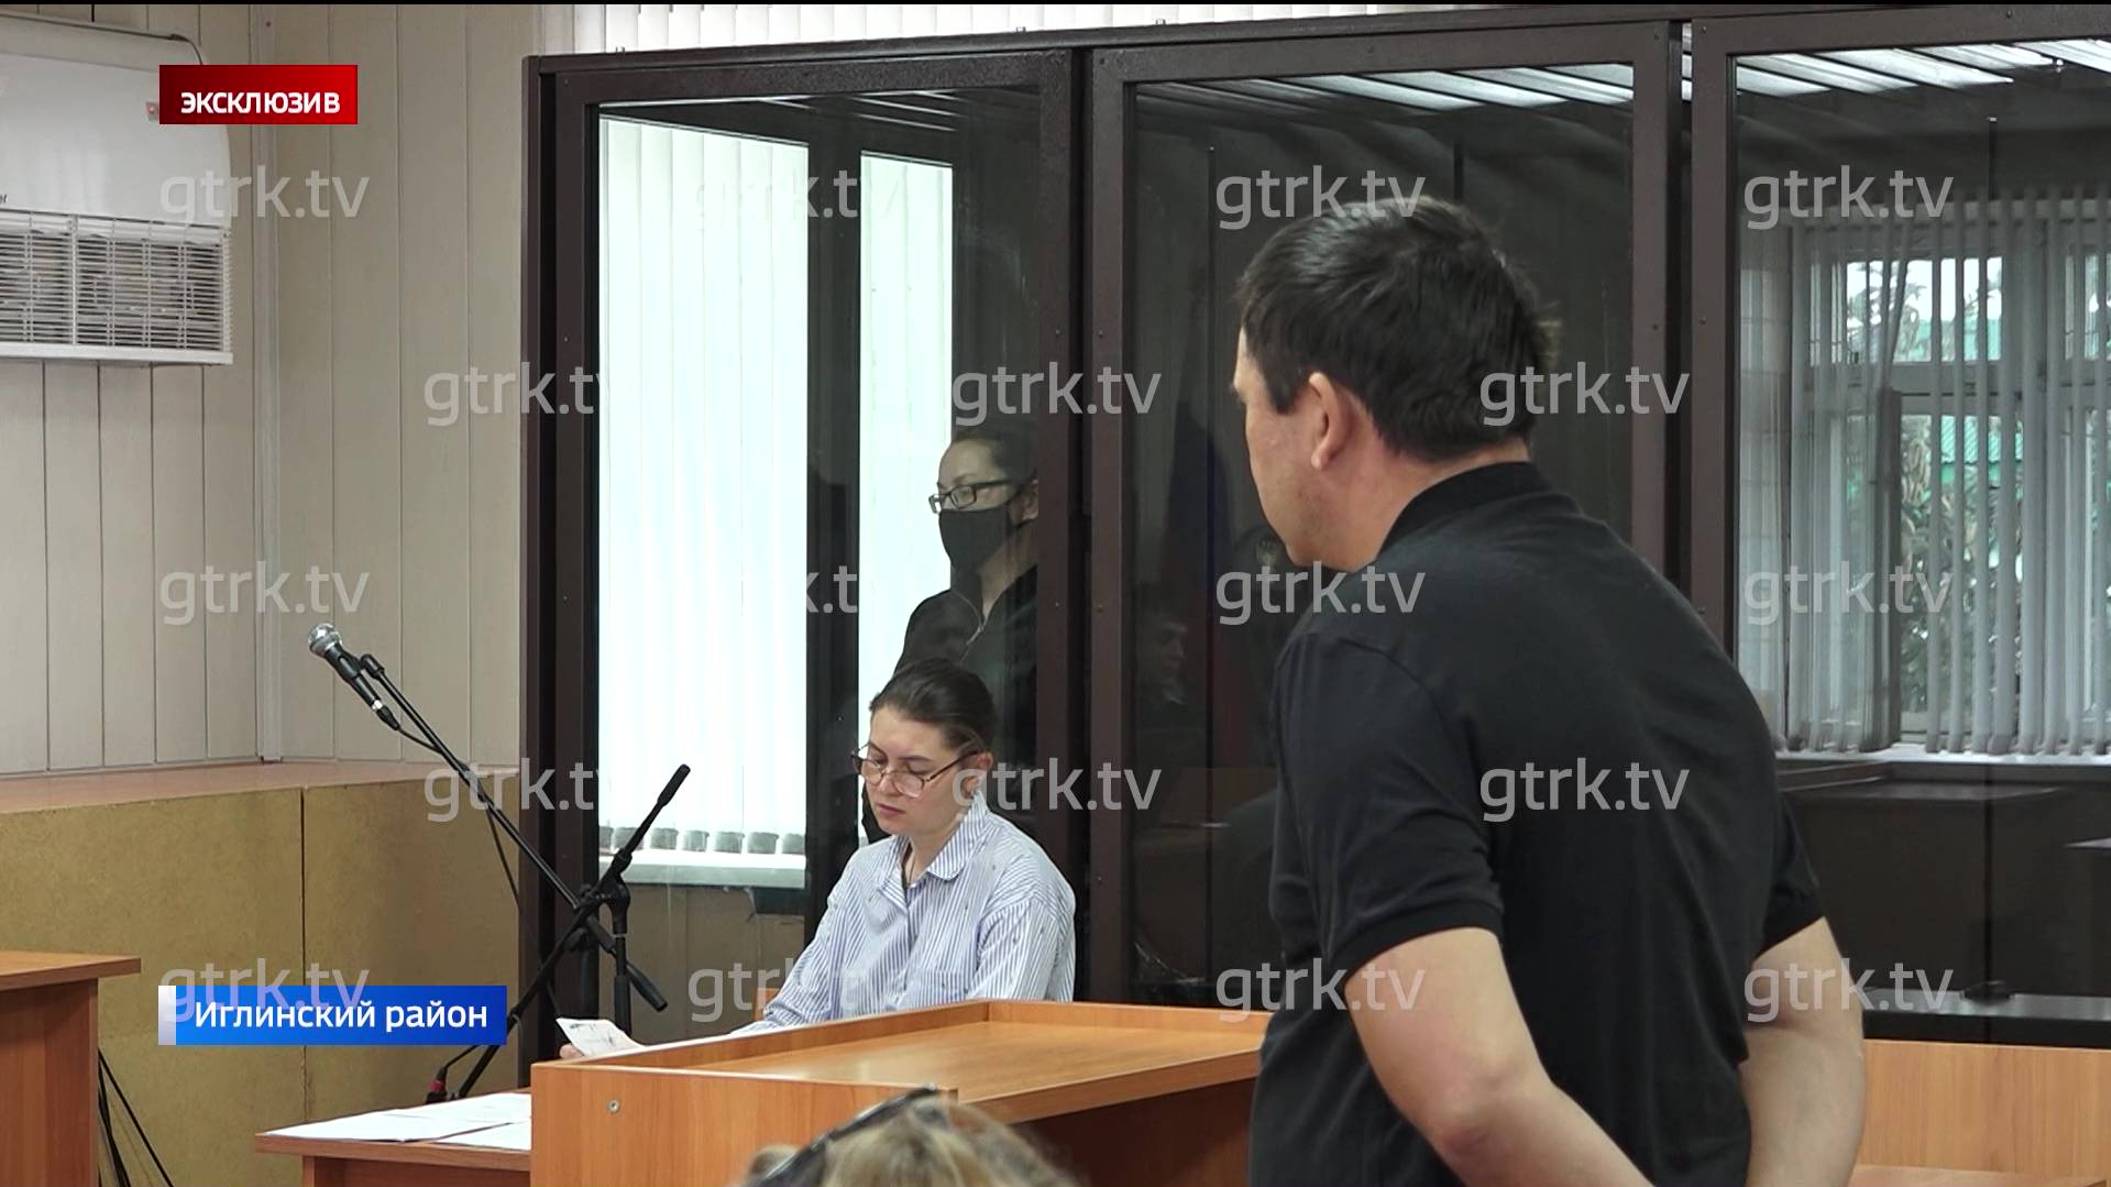 Полтергейст в зале заседаний: как судили убийцу пенсионерки из Башкирии в репортаже «Вестей»